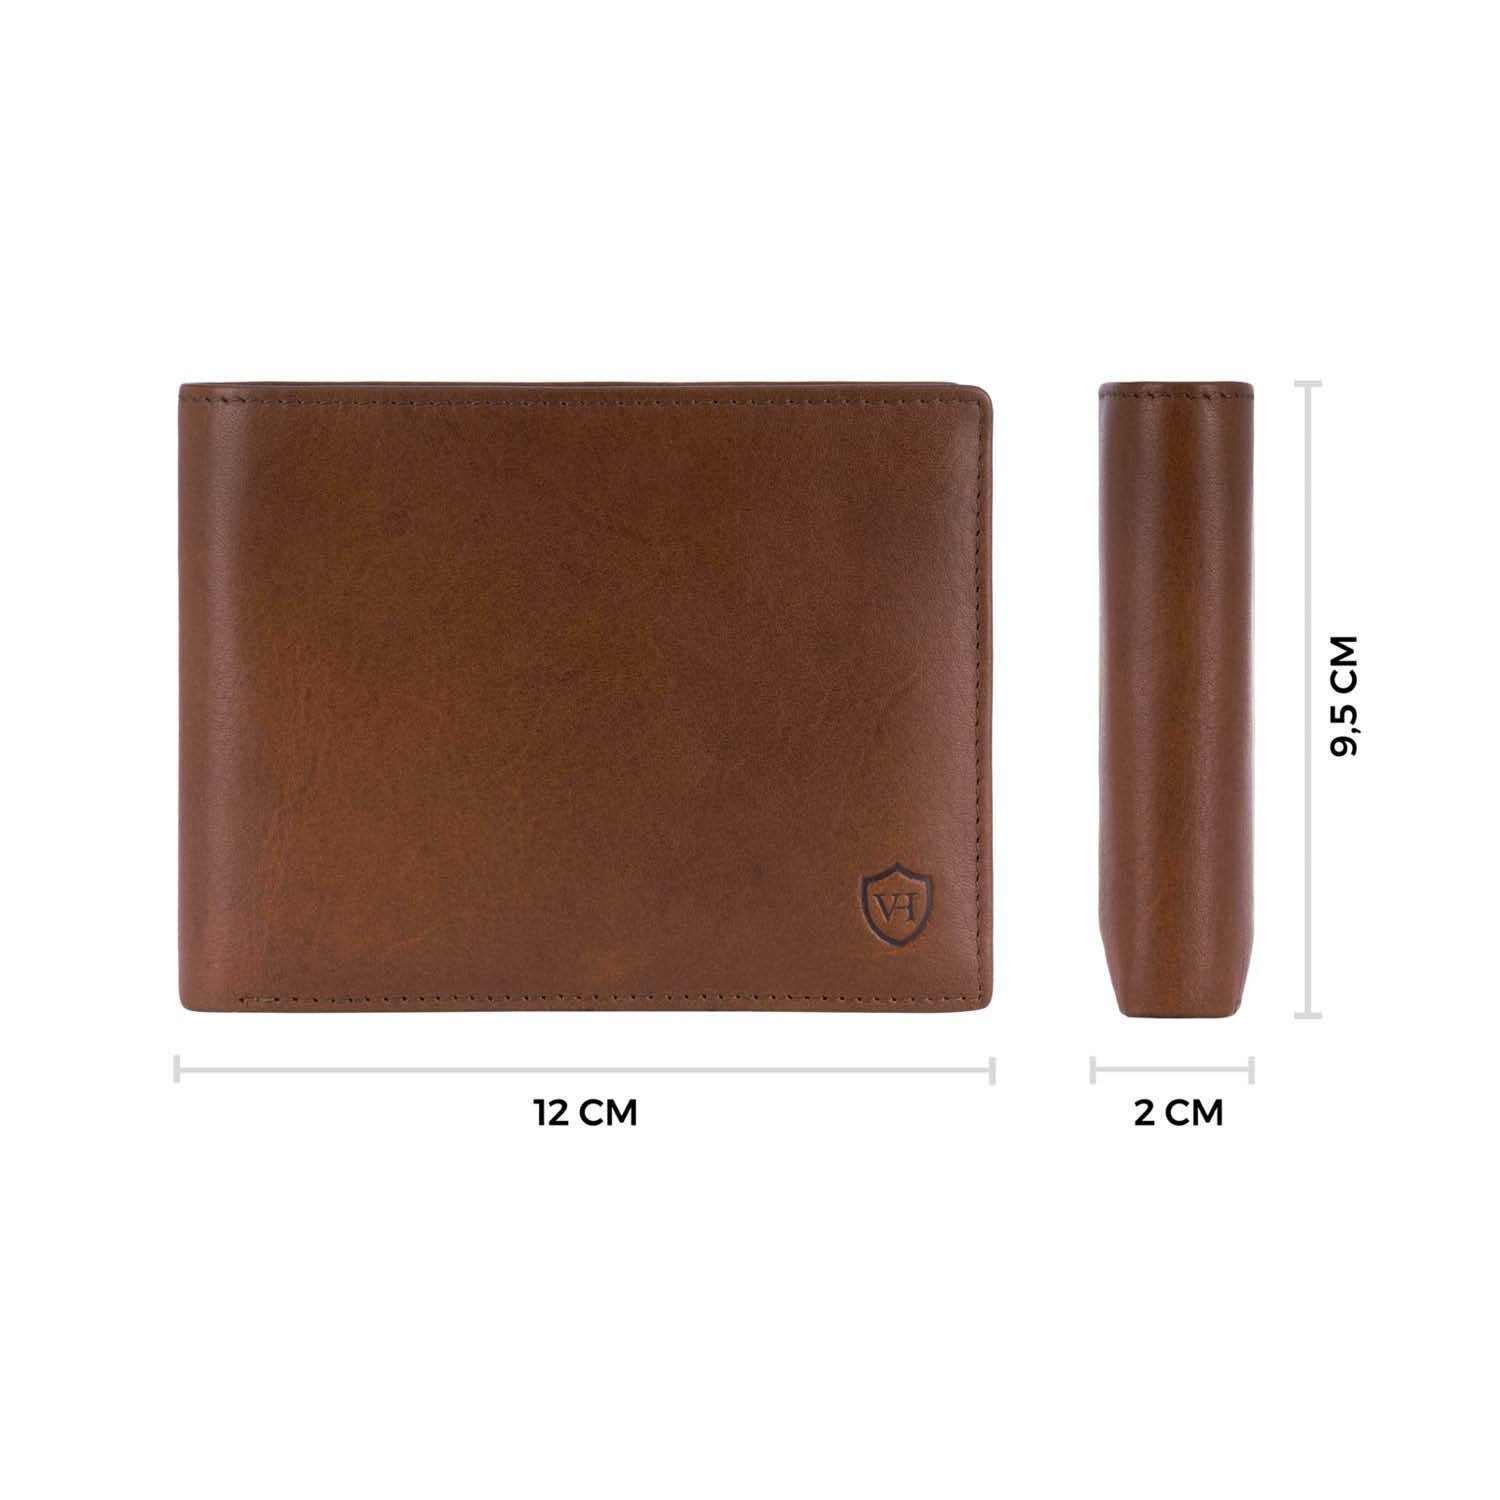 VON HEESEN Geldbörse Geldbeutel mit 13 inkl. Cognac-Braun RFID-Schutz Kartenfächer, Portemonnaie & Geschenkbox